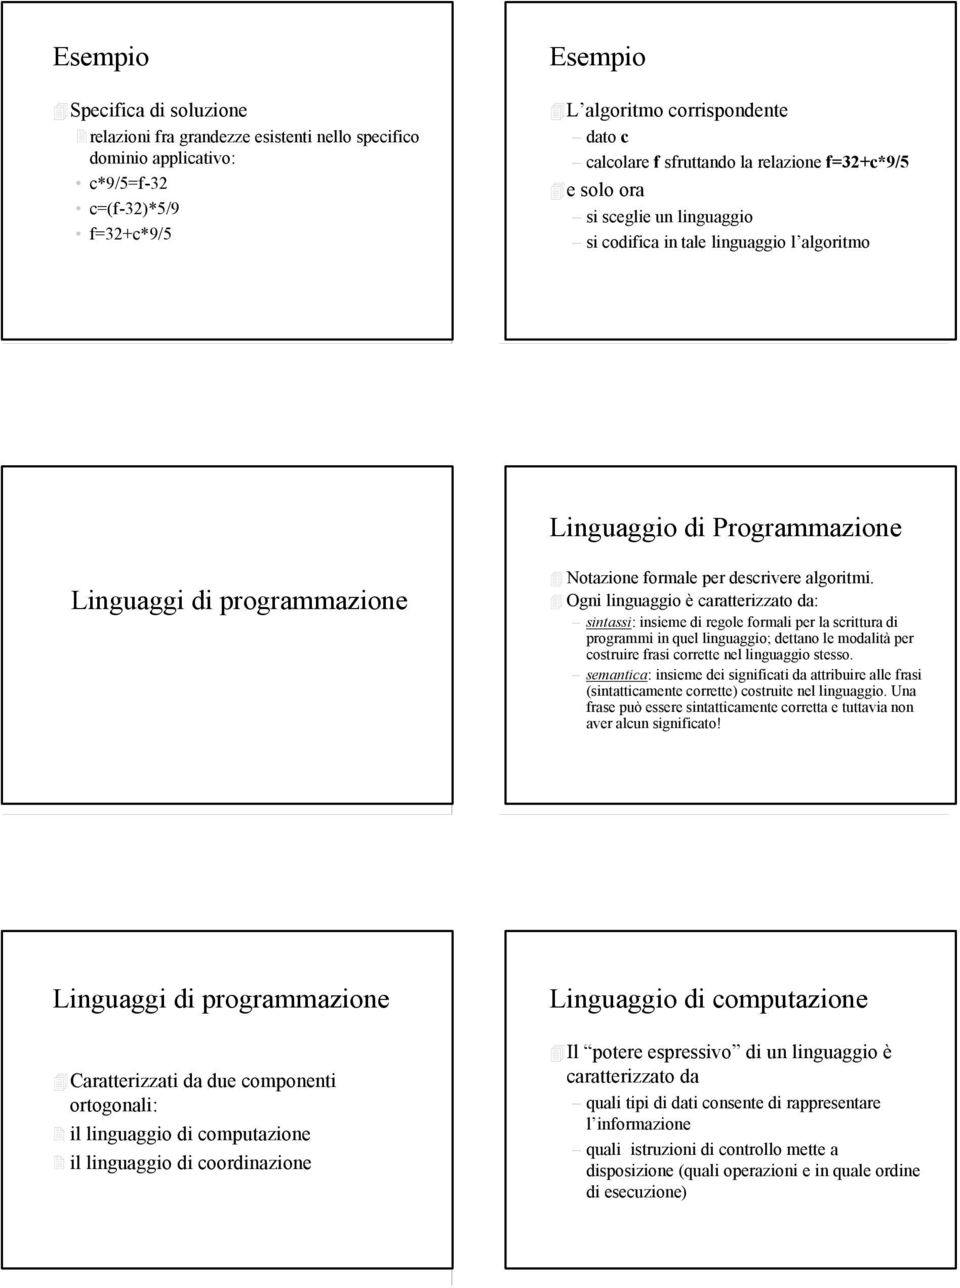 Ogni linguaggio è caratterizzato da: sintassi: insieme di regole formali per la scrittura di programmi in quel linguaggio; dettano le modalità per costruire frasi corrette nel linguaggio stesso.